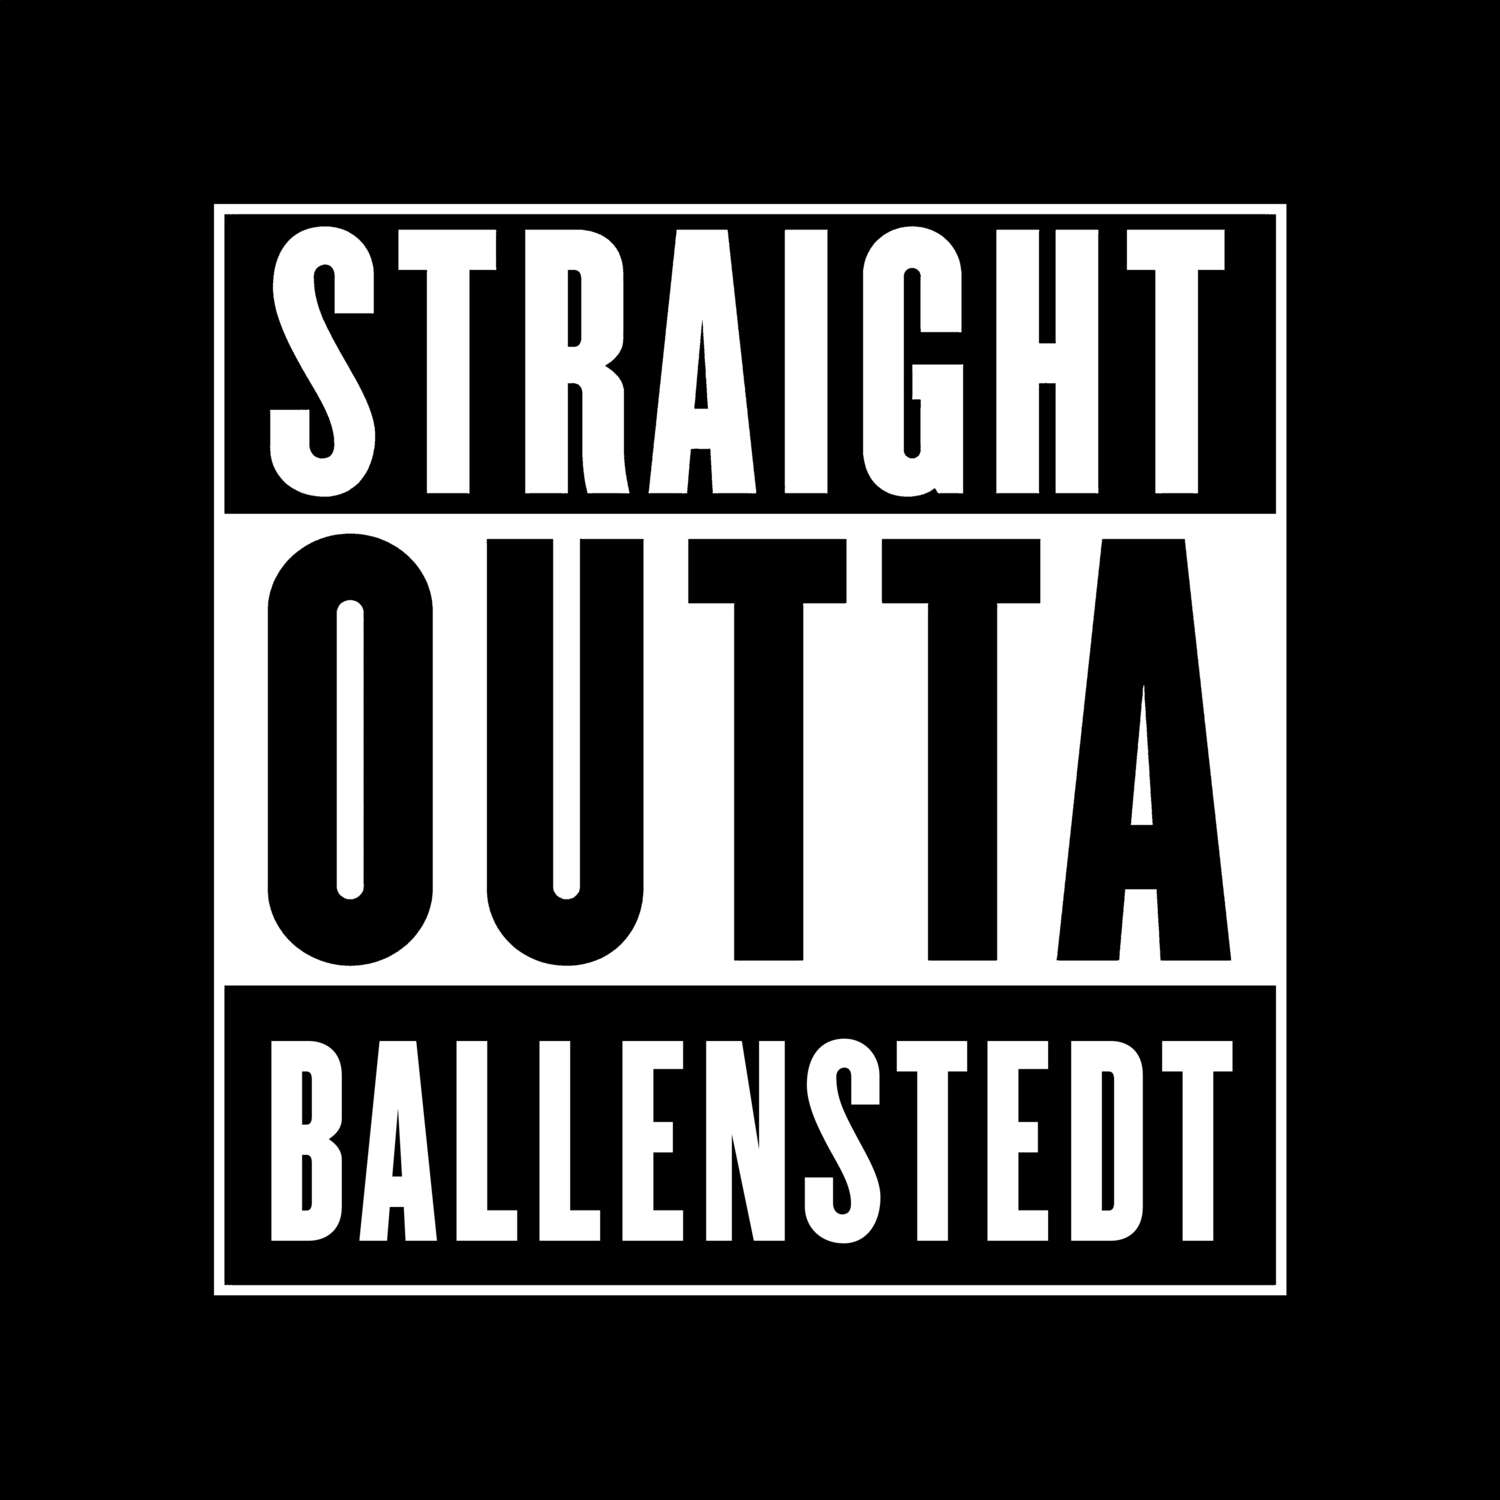 Ballenstedt T-Shirt »Straight Outta«